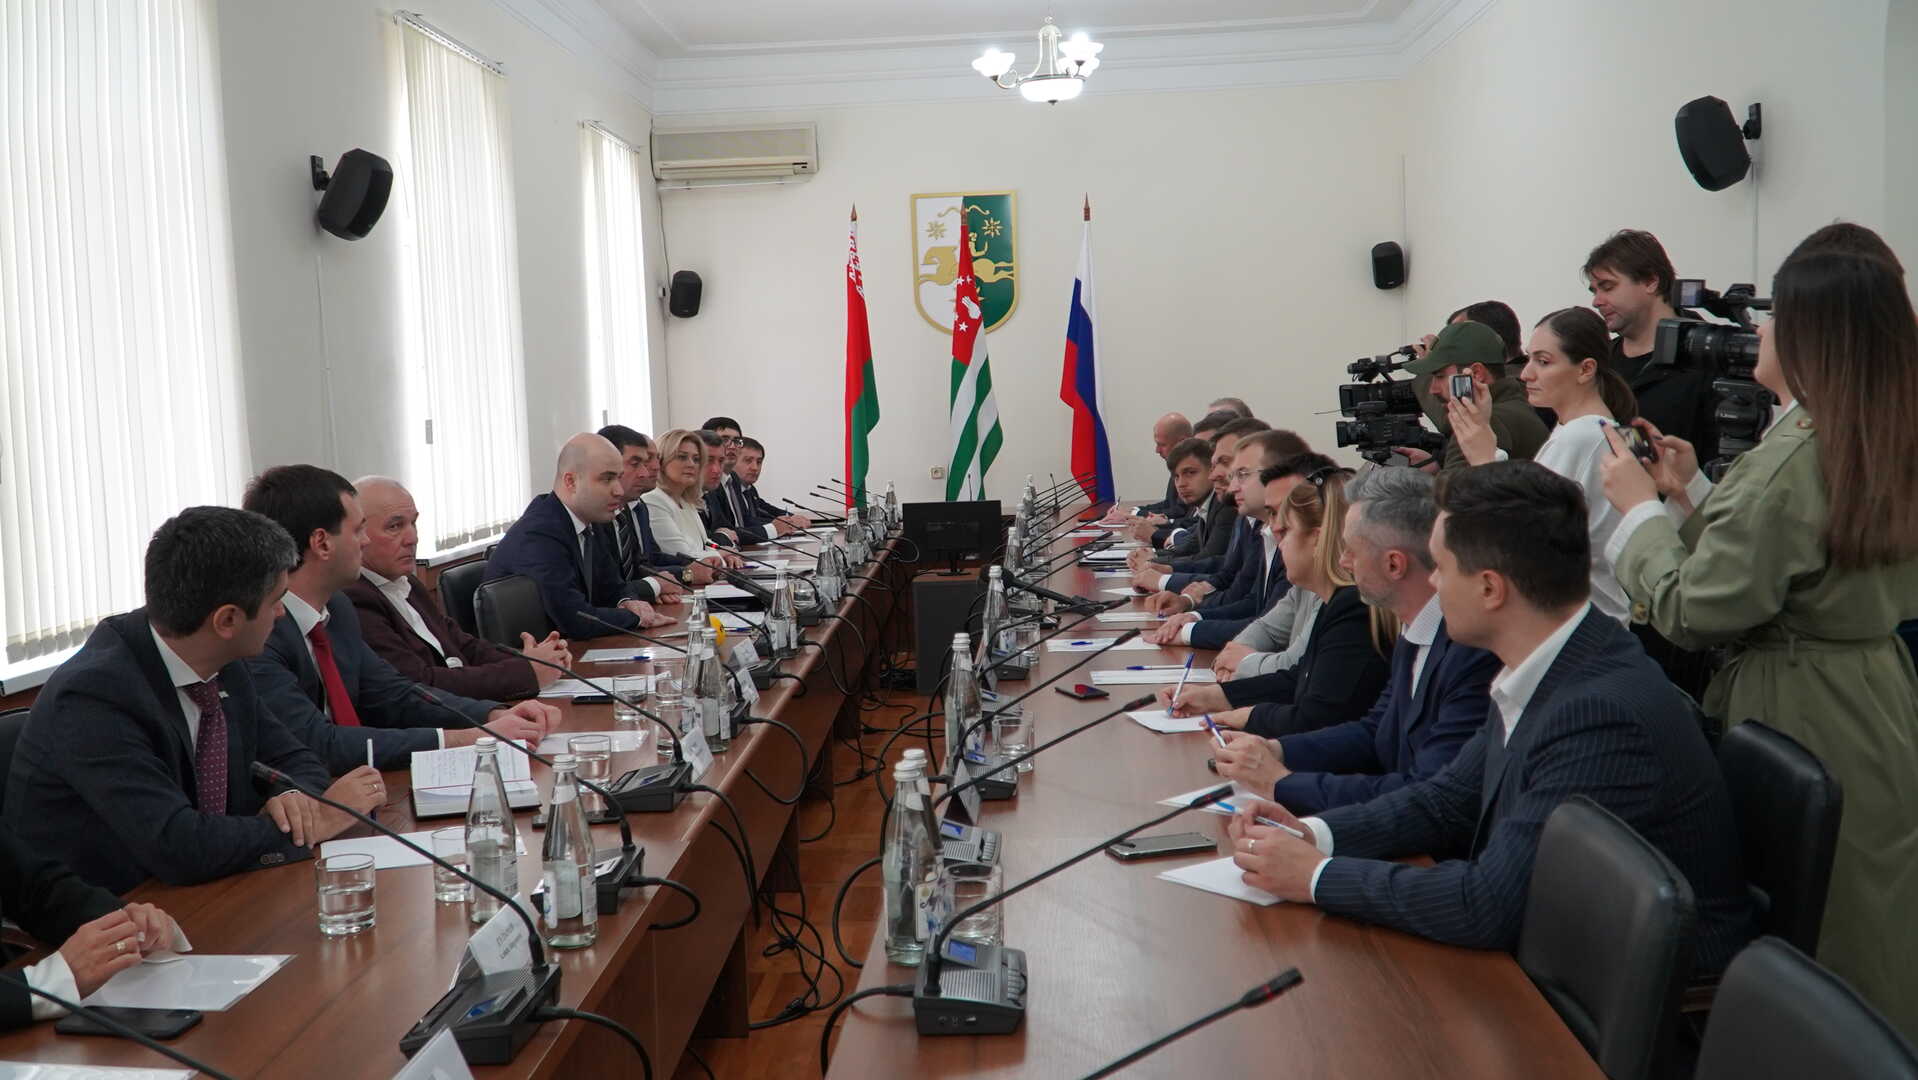 Парламентское собрание Союза Беларуси и России  вместе с Республикой Абхазия будут наращивать усилия по решению совместных задач